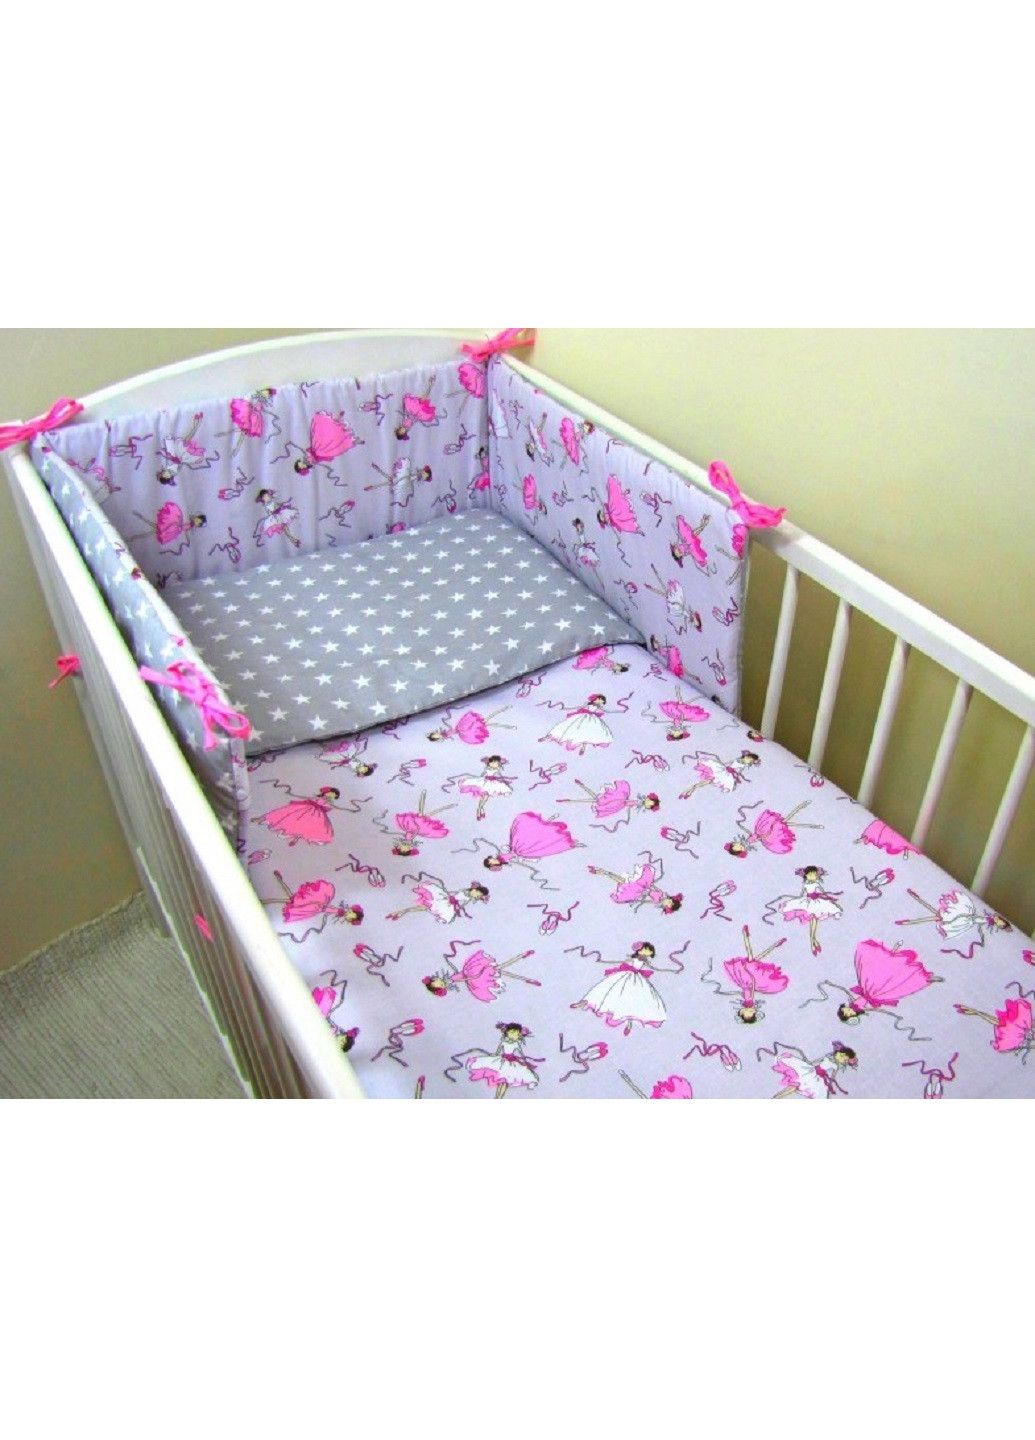 Комплект в детскую кроватку кровать люльку набор бортики защита на три стороны постельное белье ручной работы (28543-Нов) Unbranded (253162755)